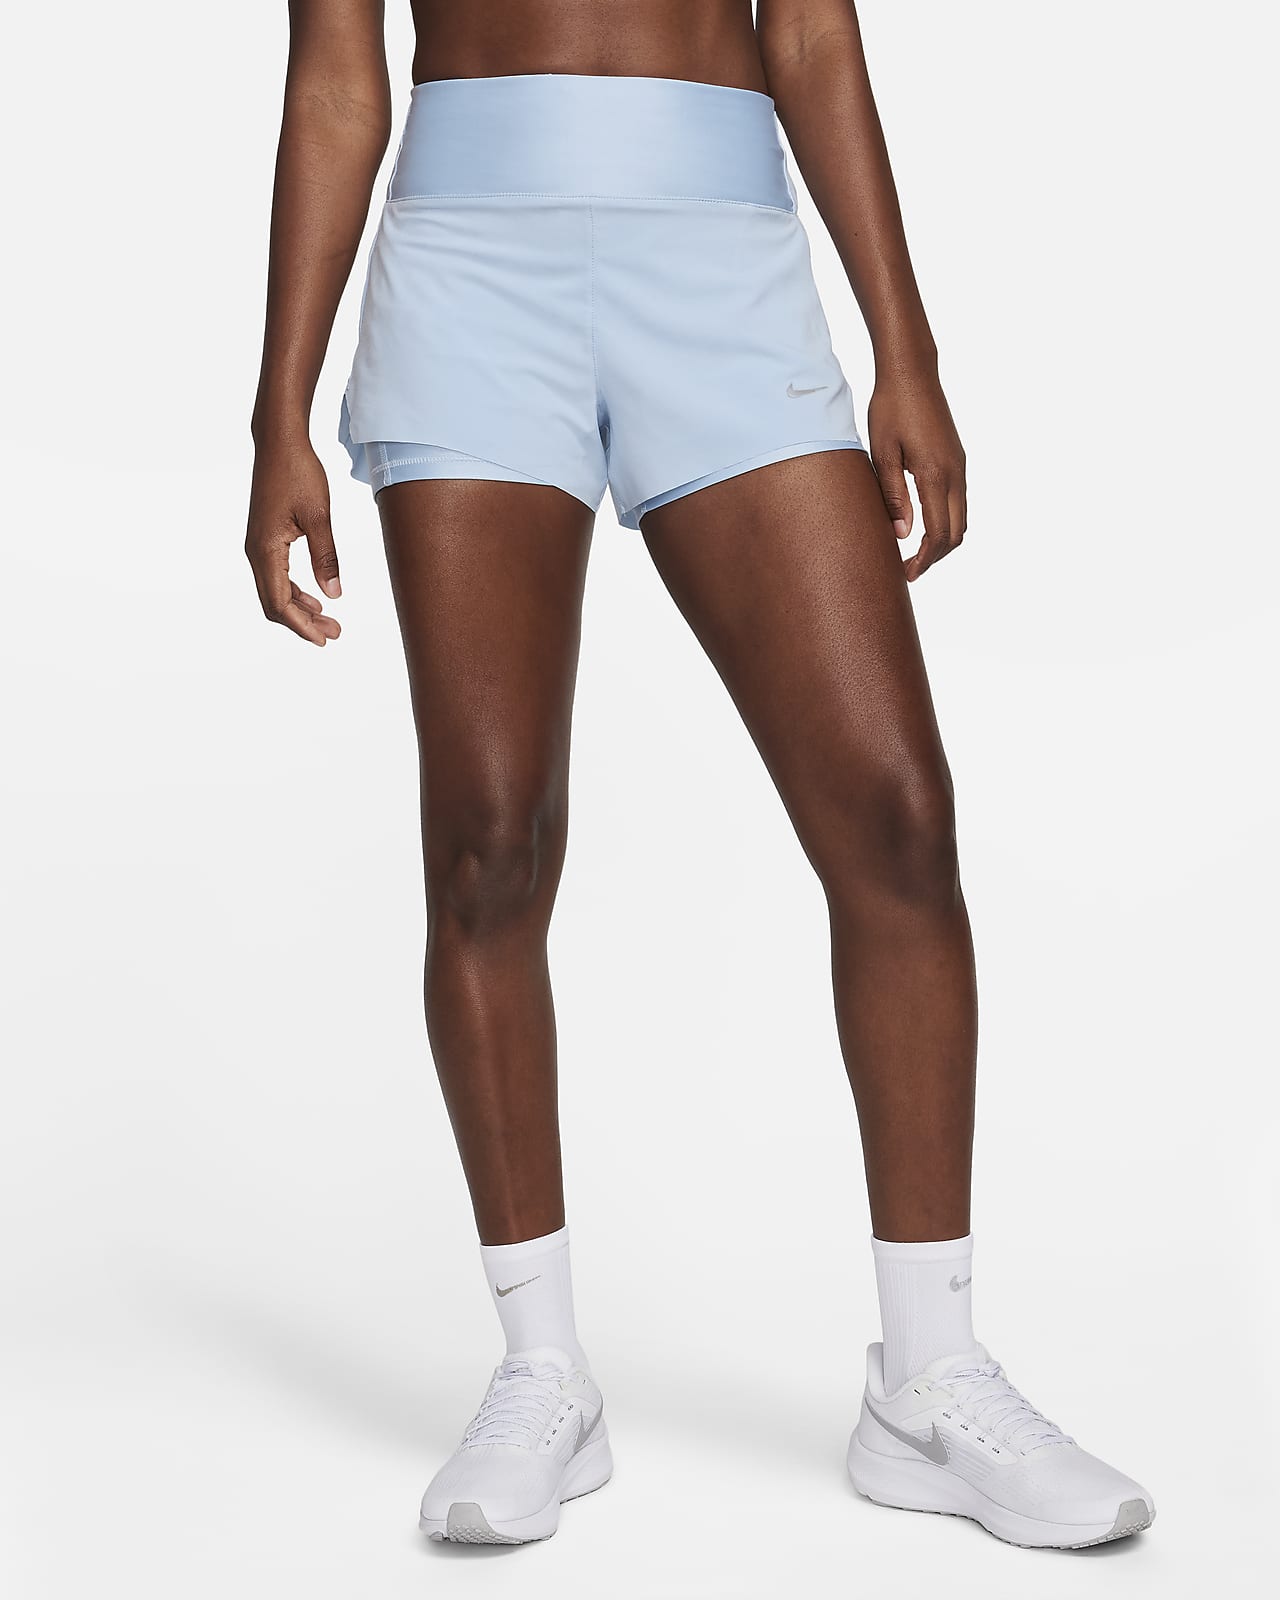 Short de running 2-en-1 avec poches taille mi-basse 8 cm Nike Dri-FIT Swift pour femme